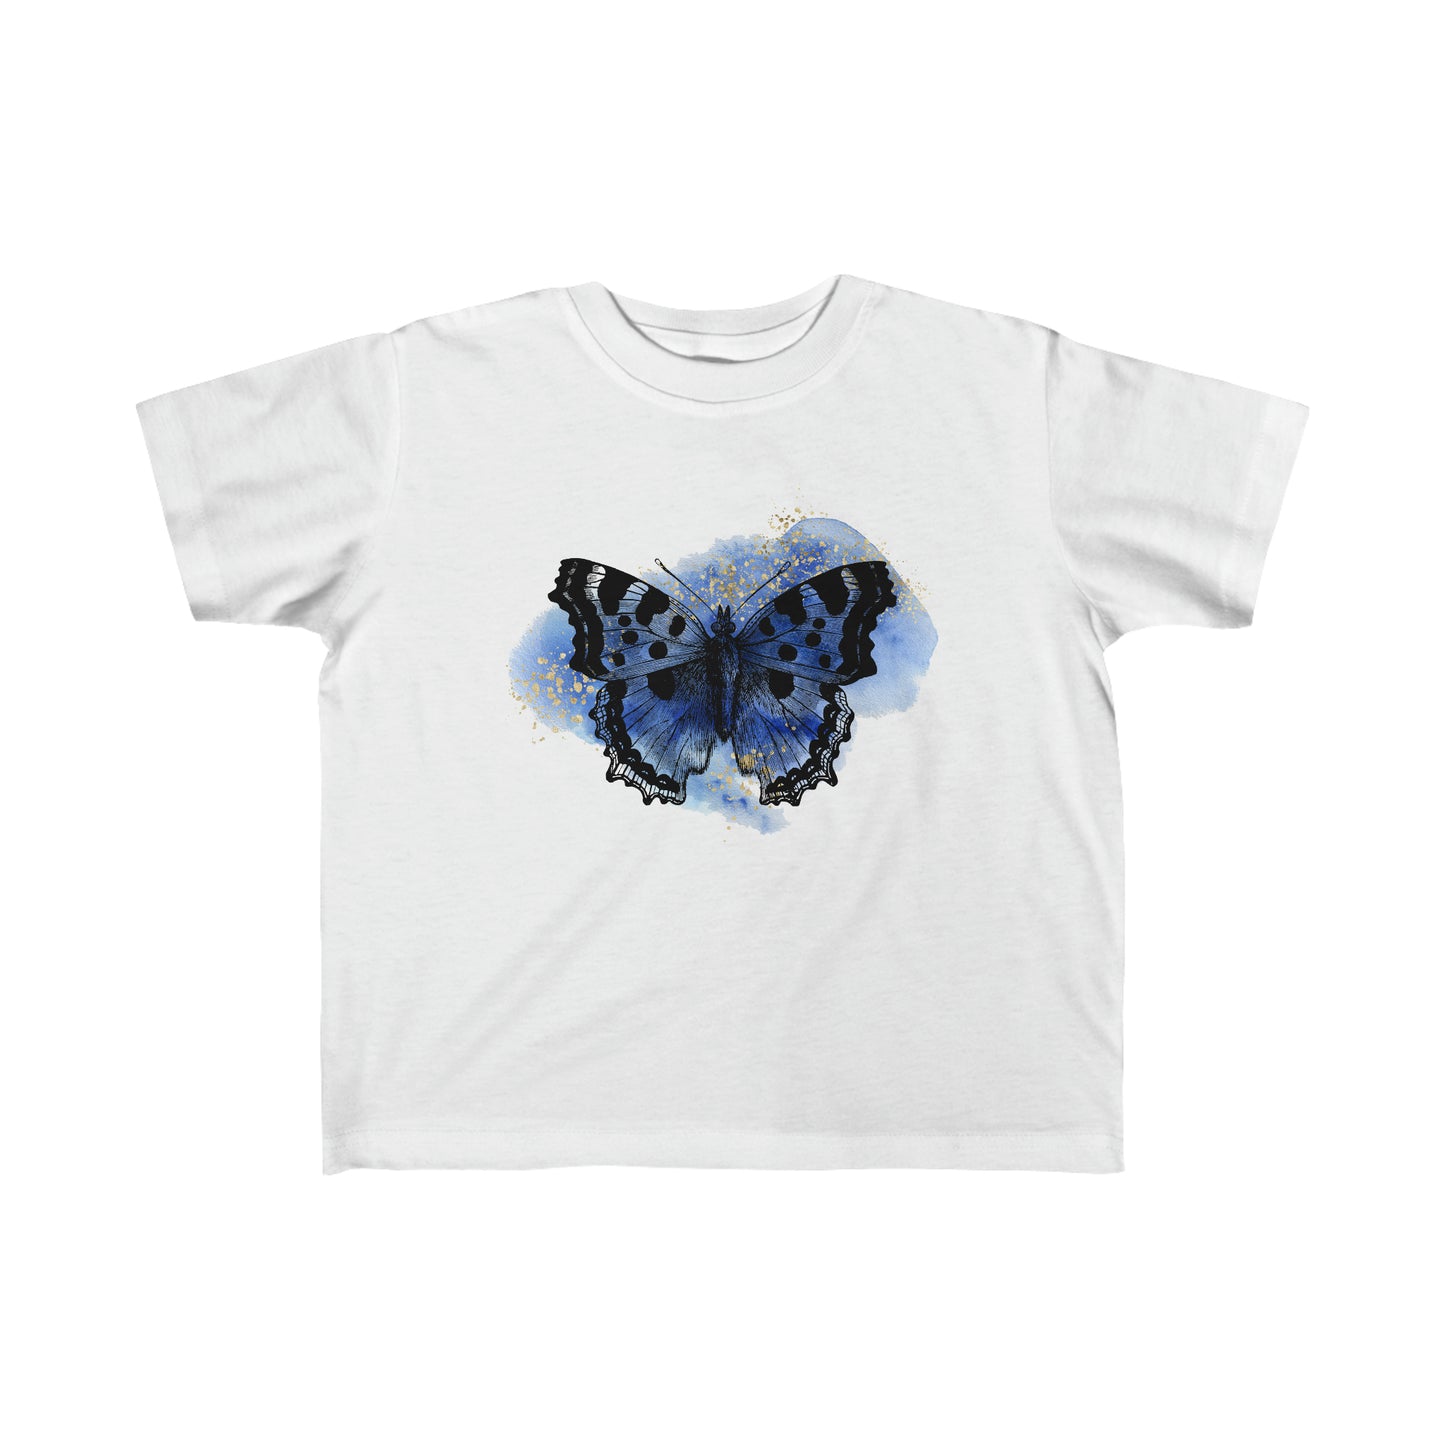 Toddler's Fine Jersey Tee, Kids Butterfly Shirt, Toddler's Short Sleeve T-Shirt